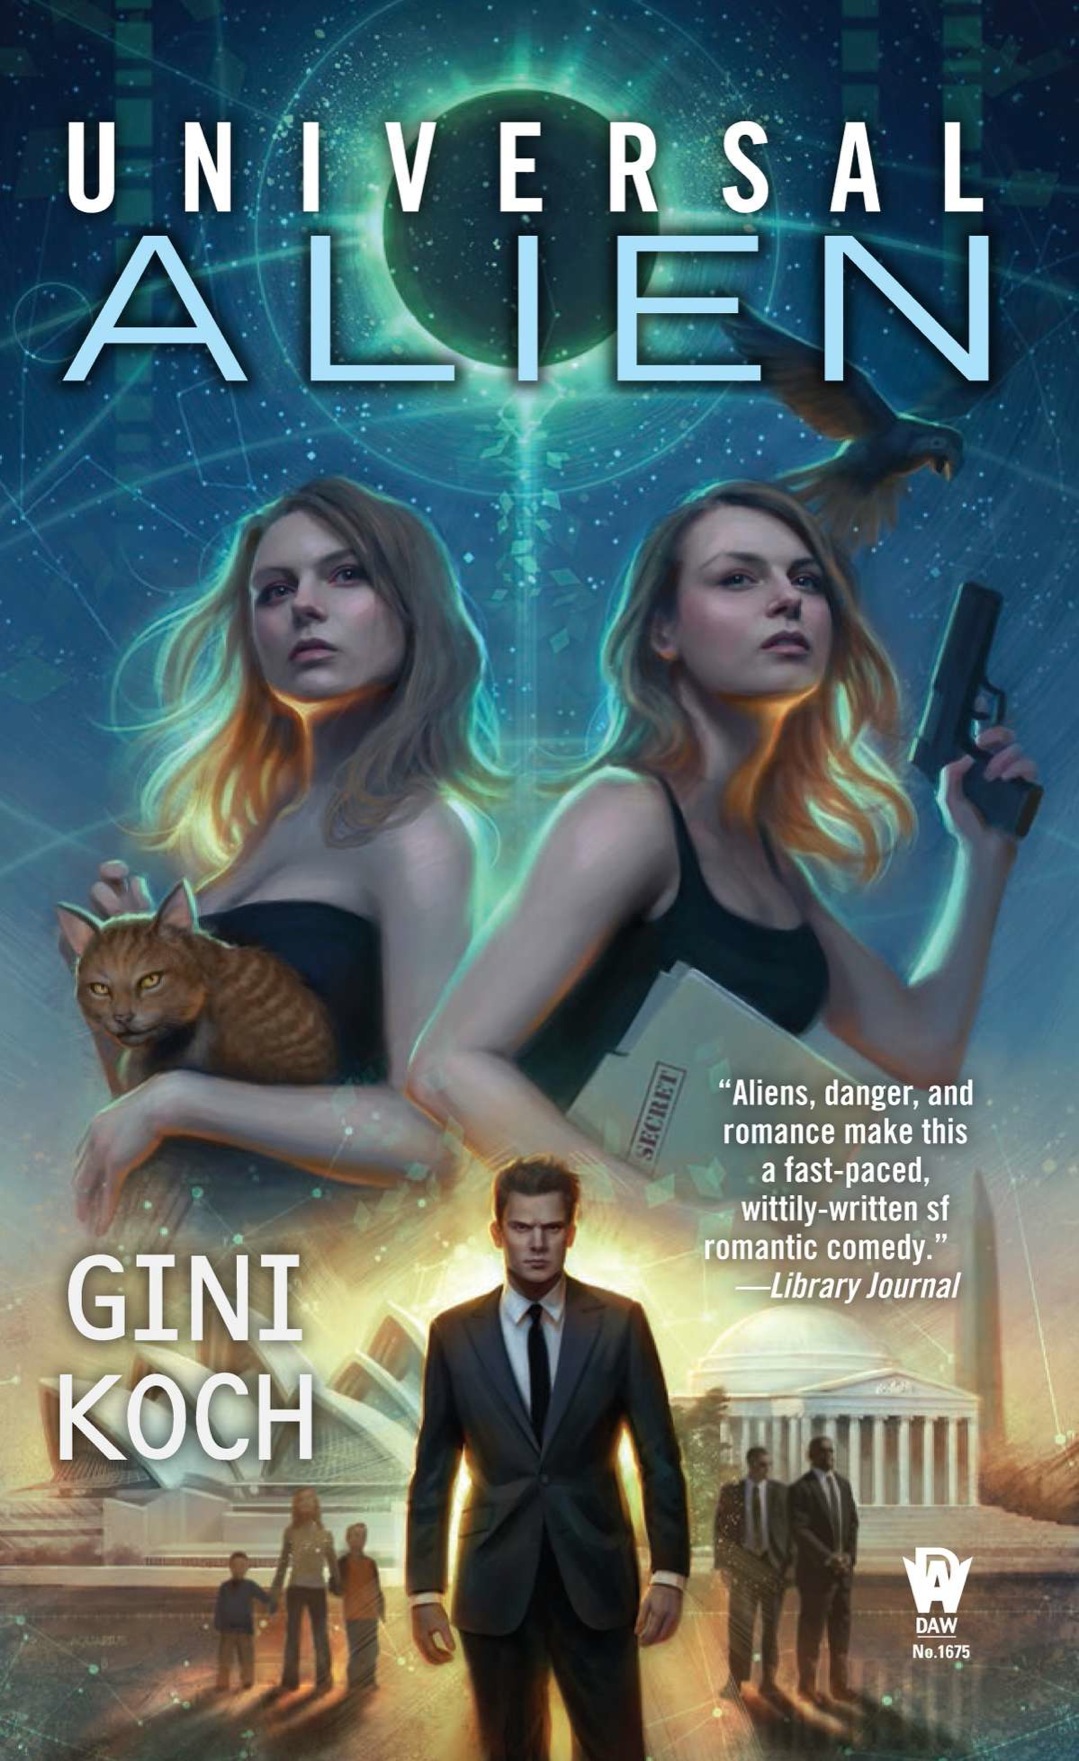 Universal Alien (2014) by Gini Koch